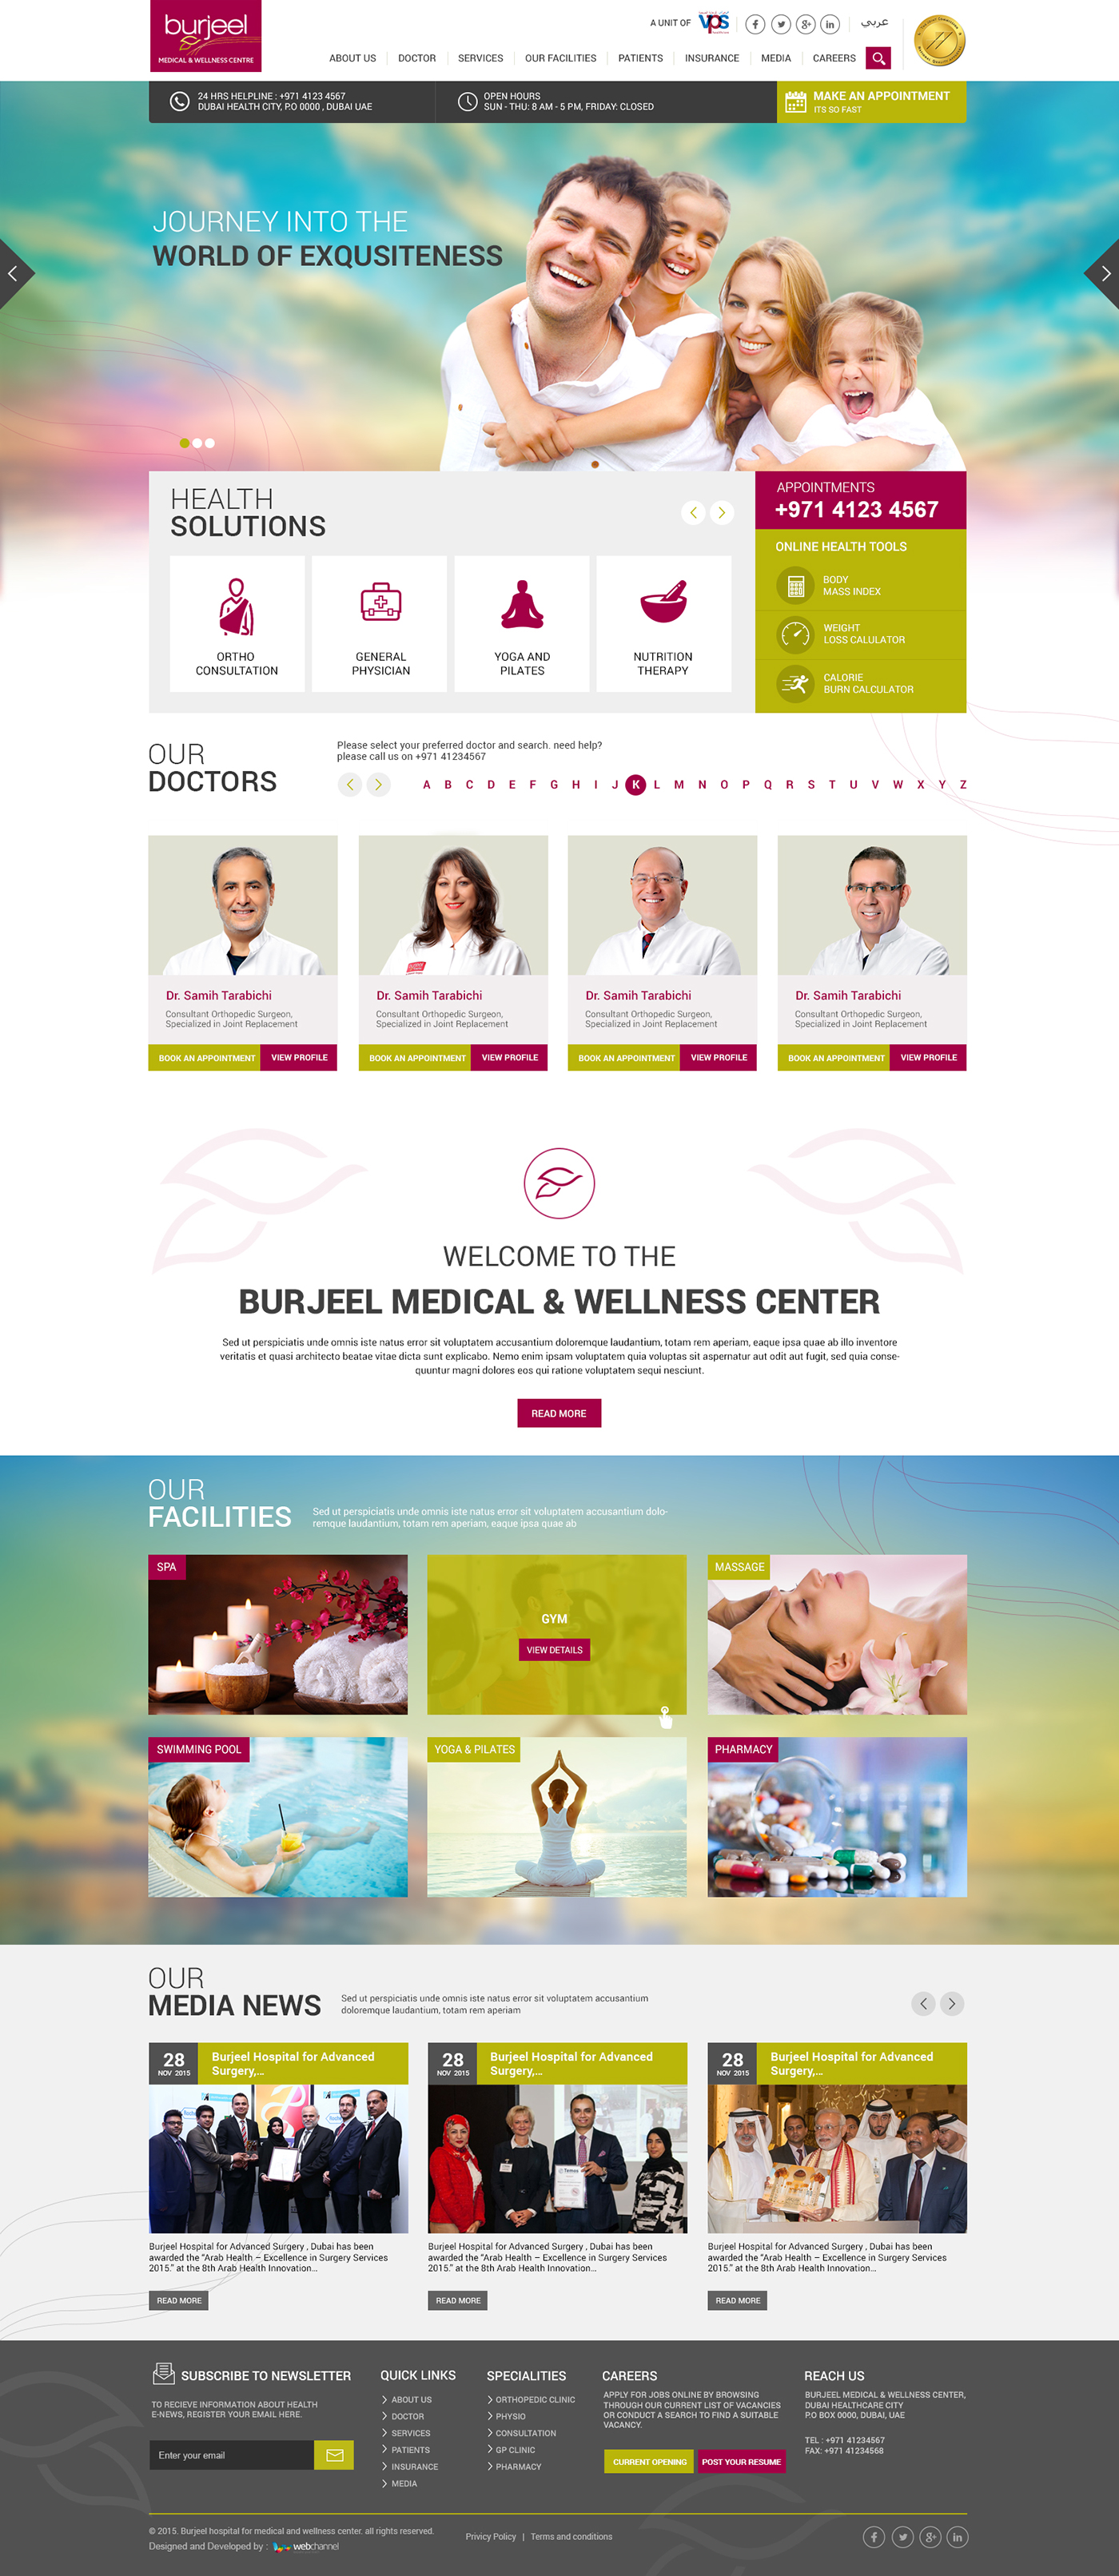 Responsive Design hospital website Layout Design Website Design